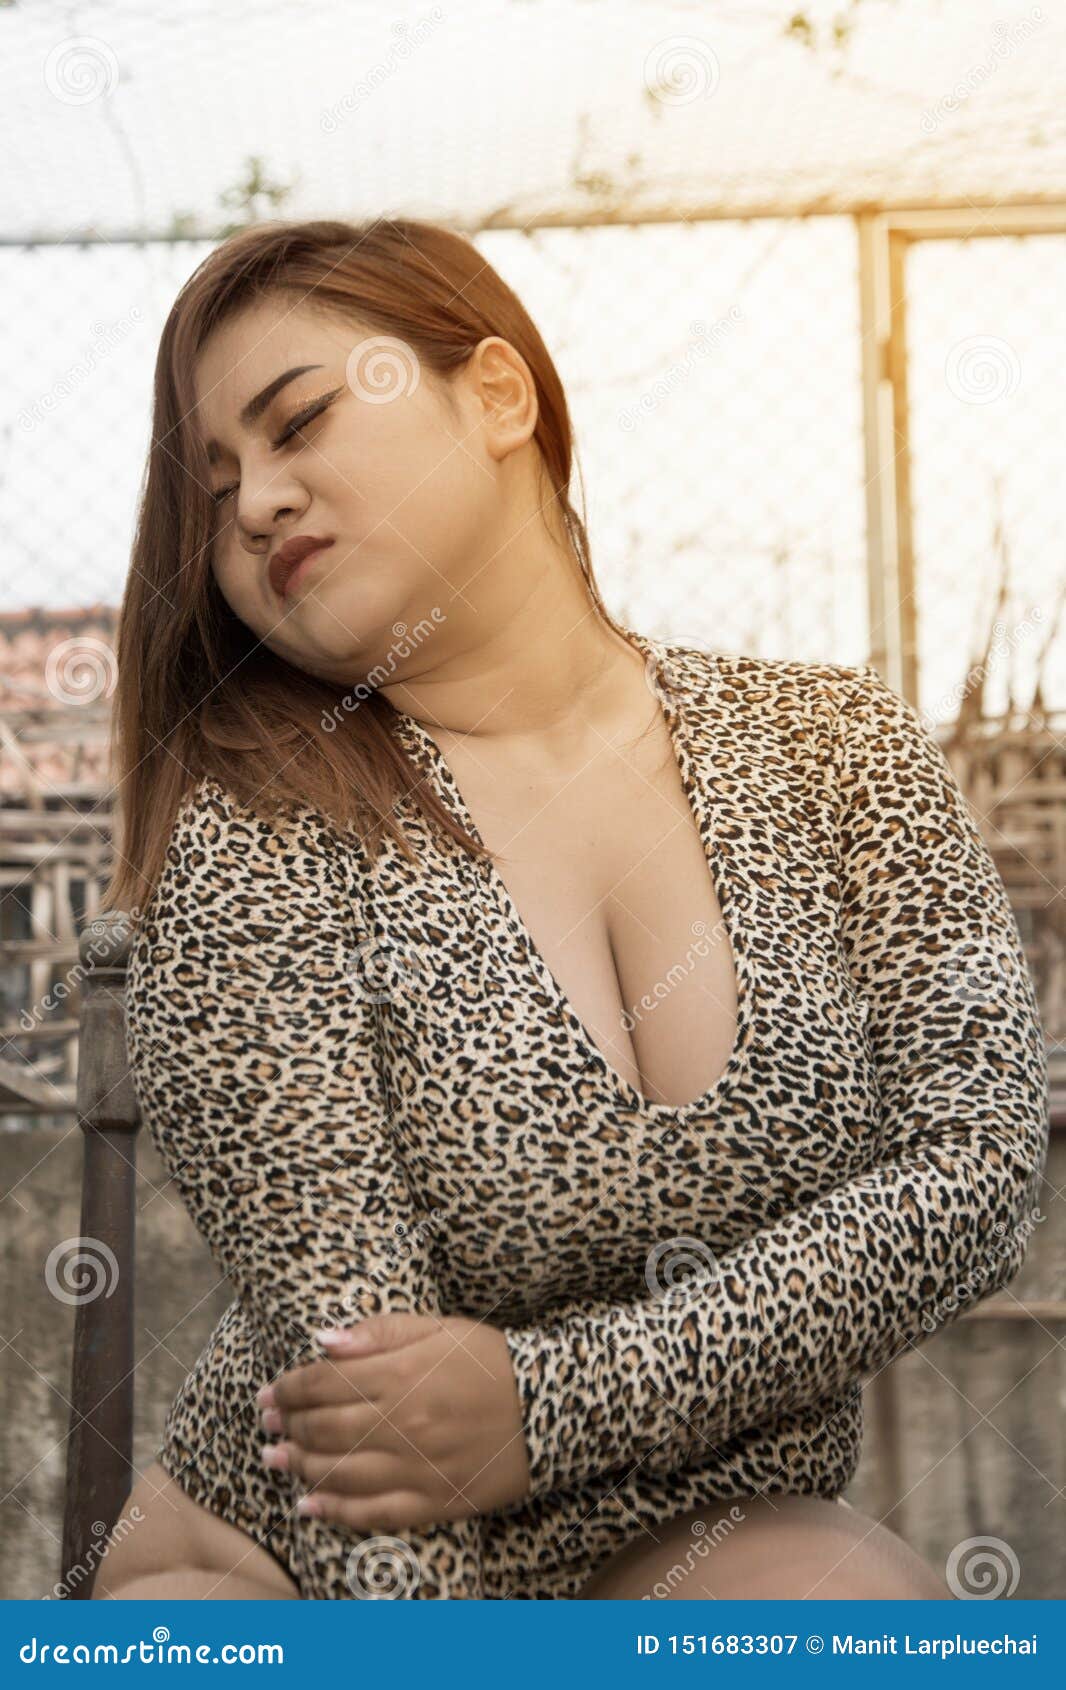 Chubby asian boobs